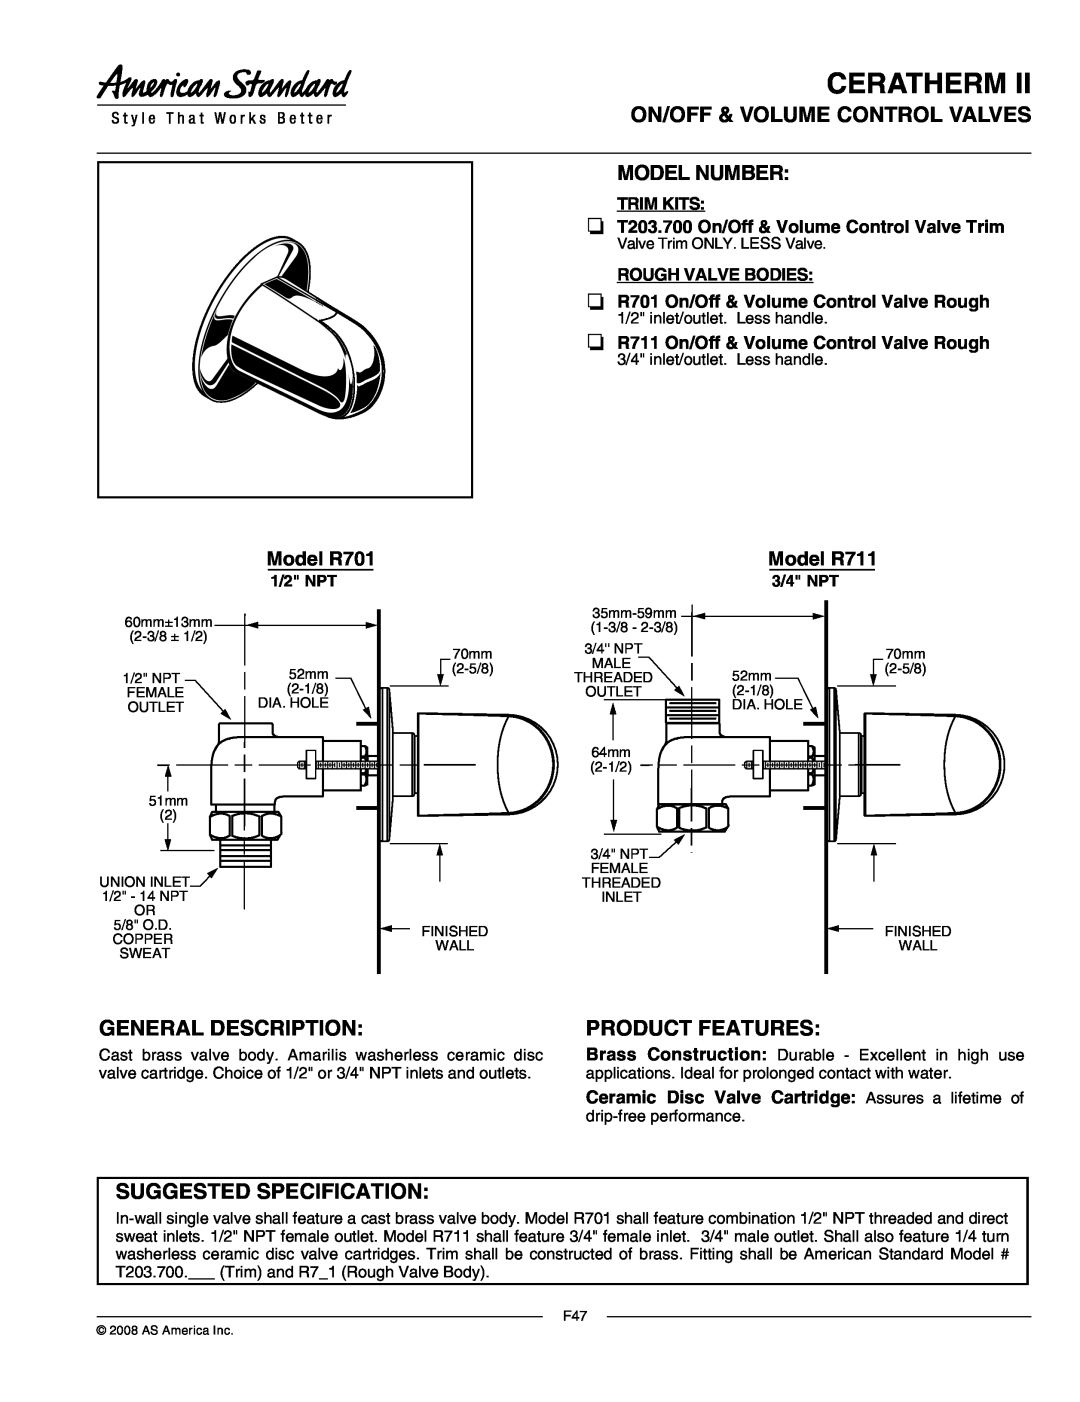 American Standard T203.700 manual Ceratherm, On/Off & Volume Control Valves Model Number, General Description, Trim Kits 